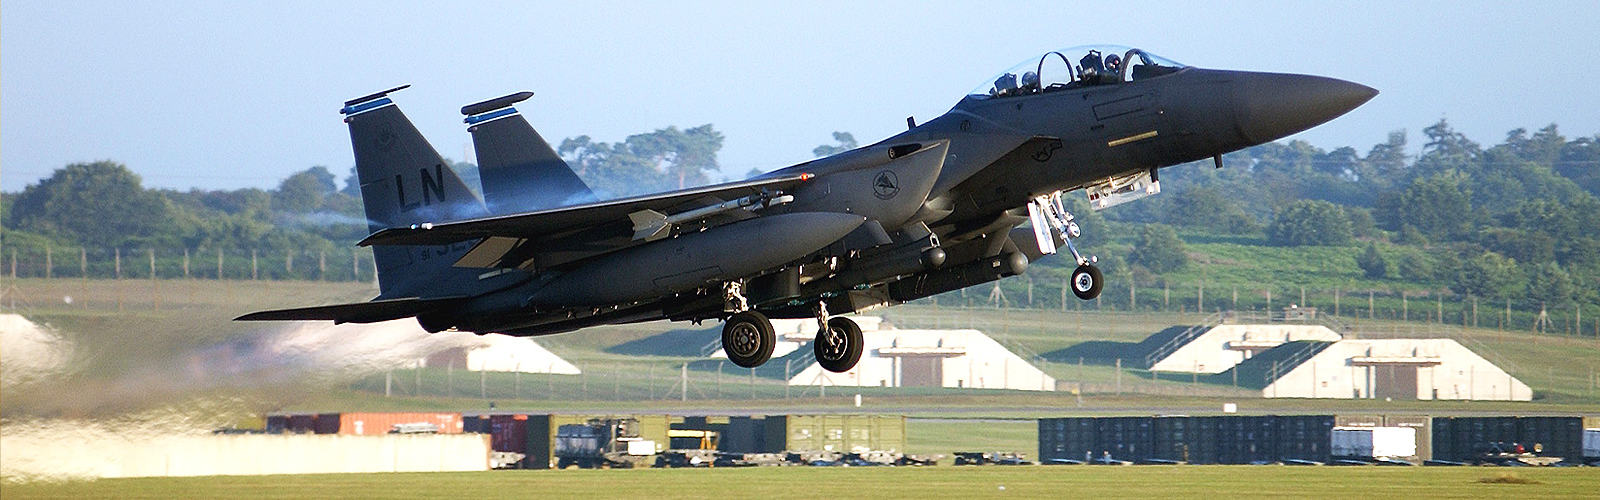 Kampfflugzeug vom Typ F-15 für Katar